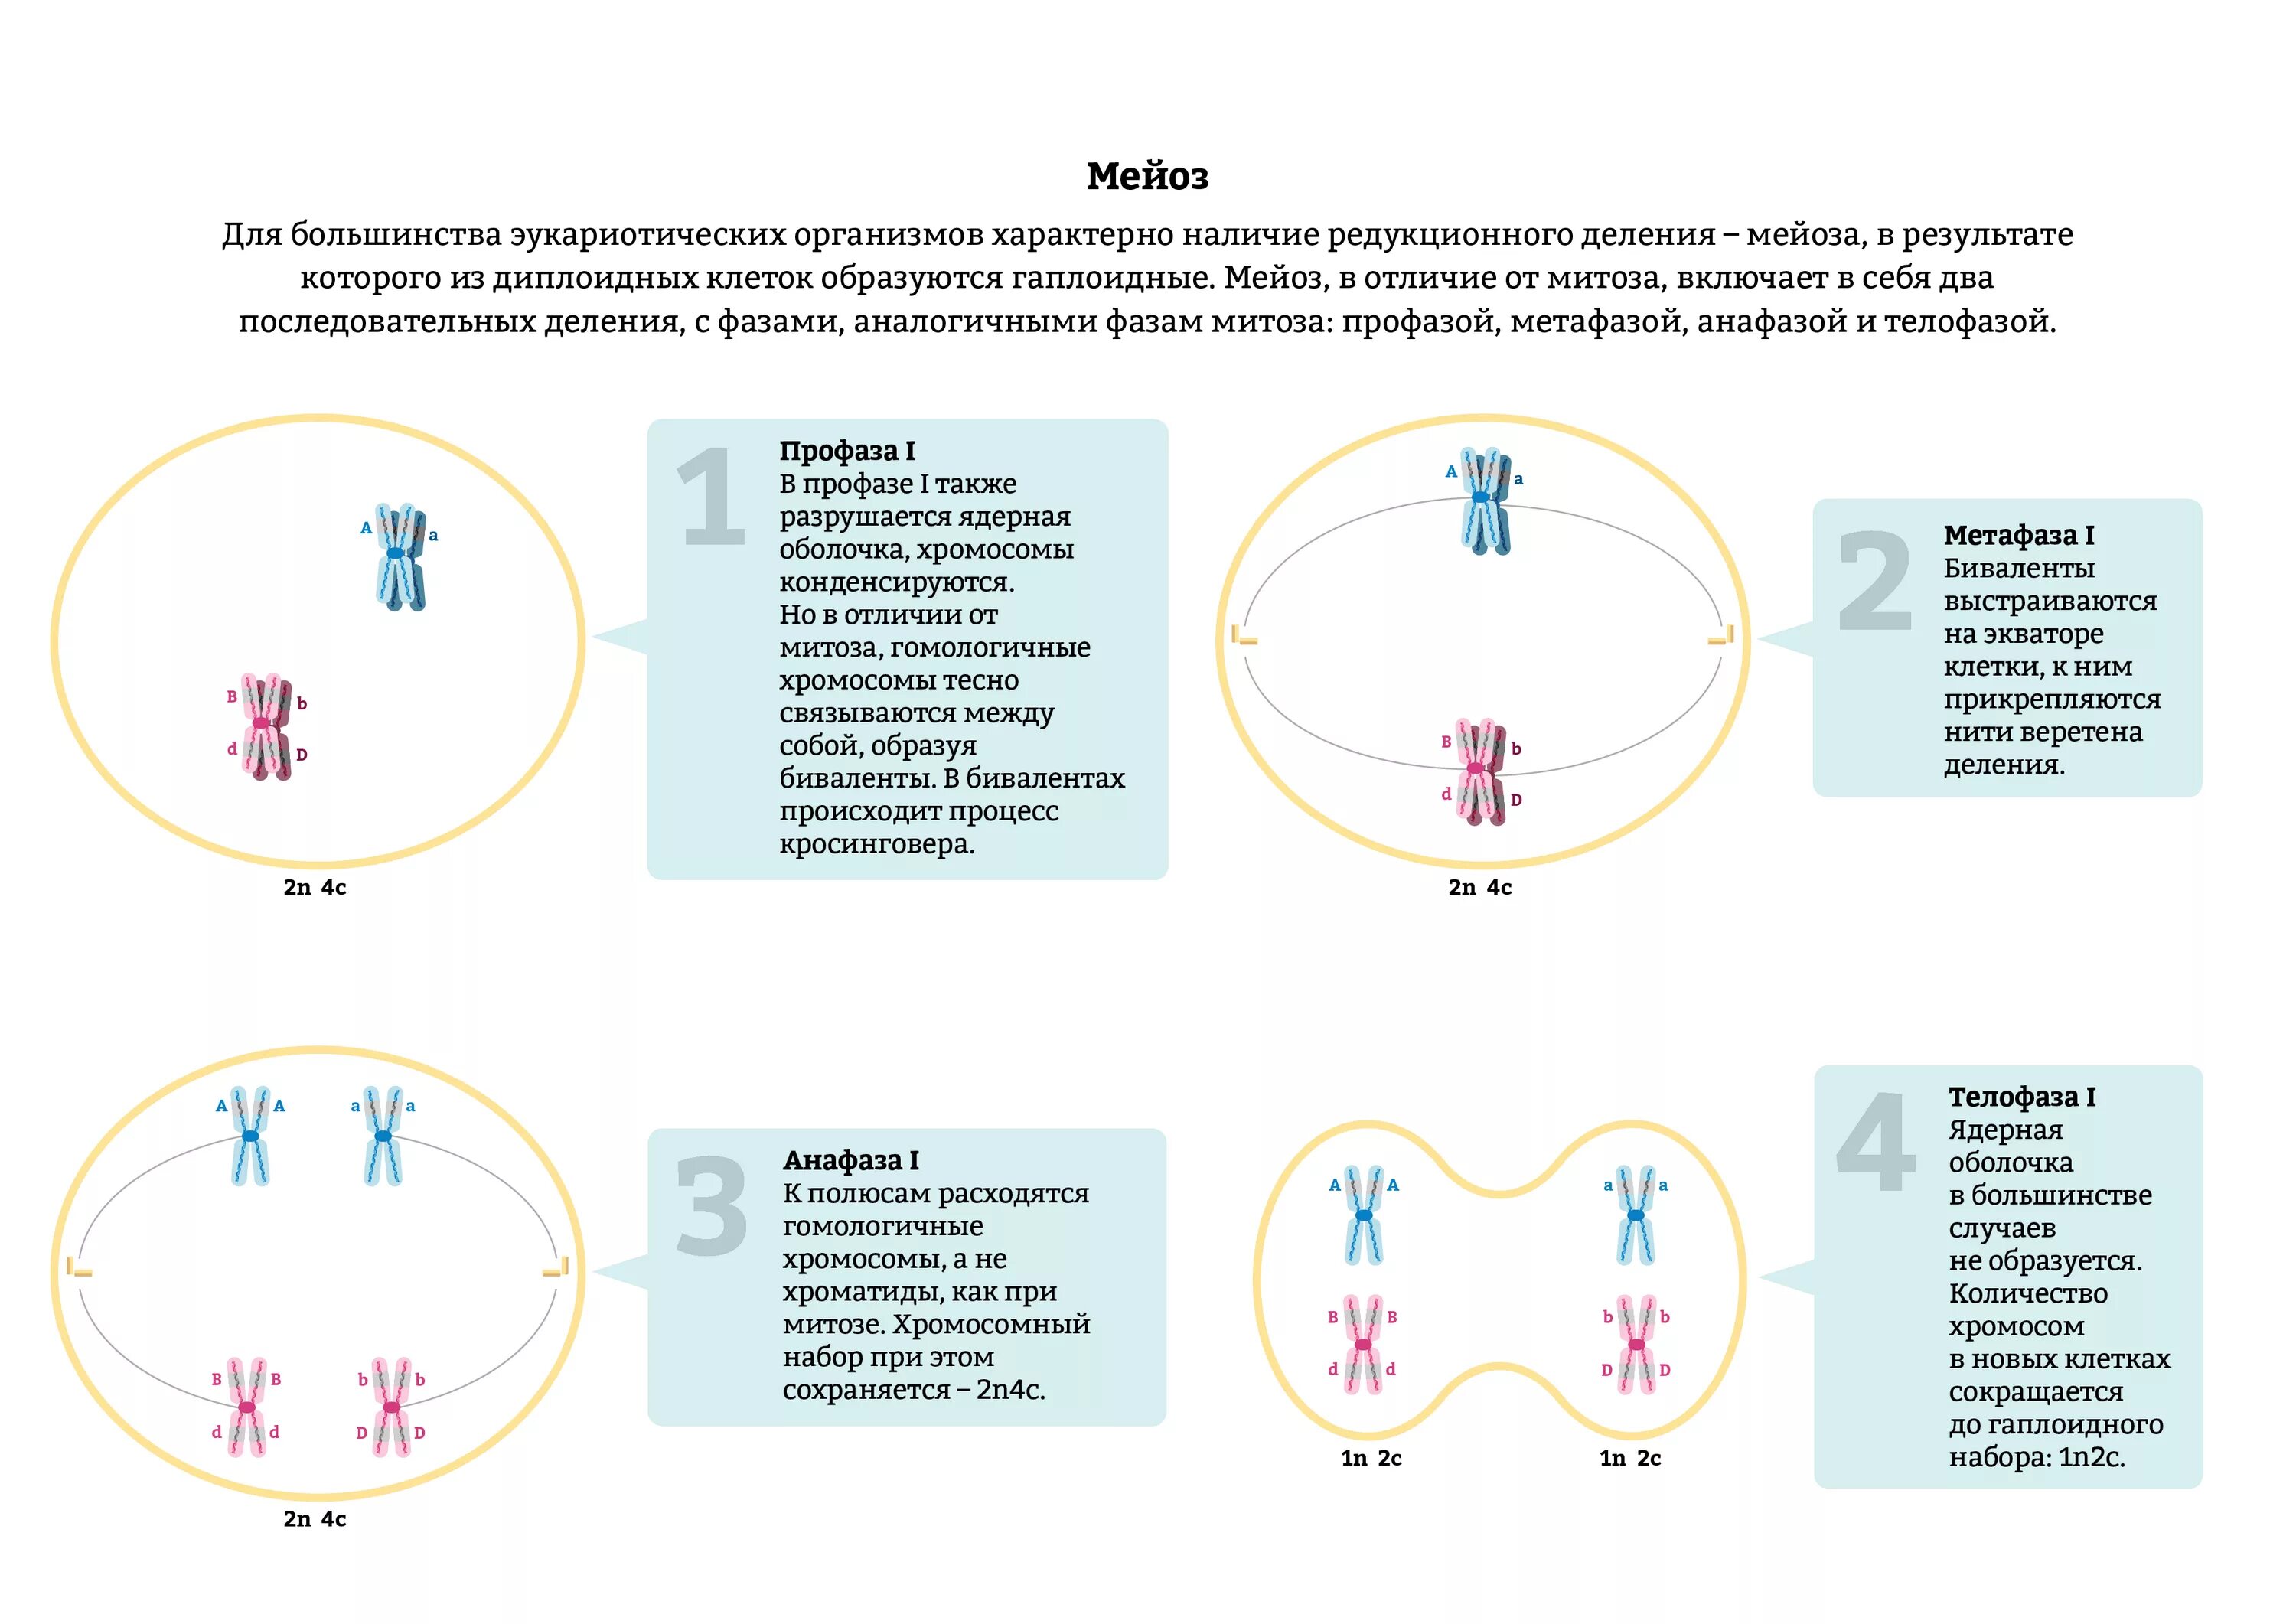 Набор хромосом в телофазе мейоза 1. Анафаза мейоза 1. Гаплоидный набор хромосом в мейозе 1. Анафаза 2 мейоза схема. Второе деление мейоза набор хромосом.